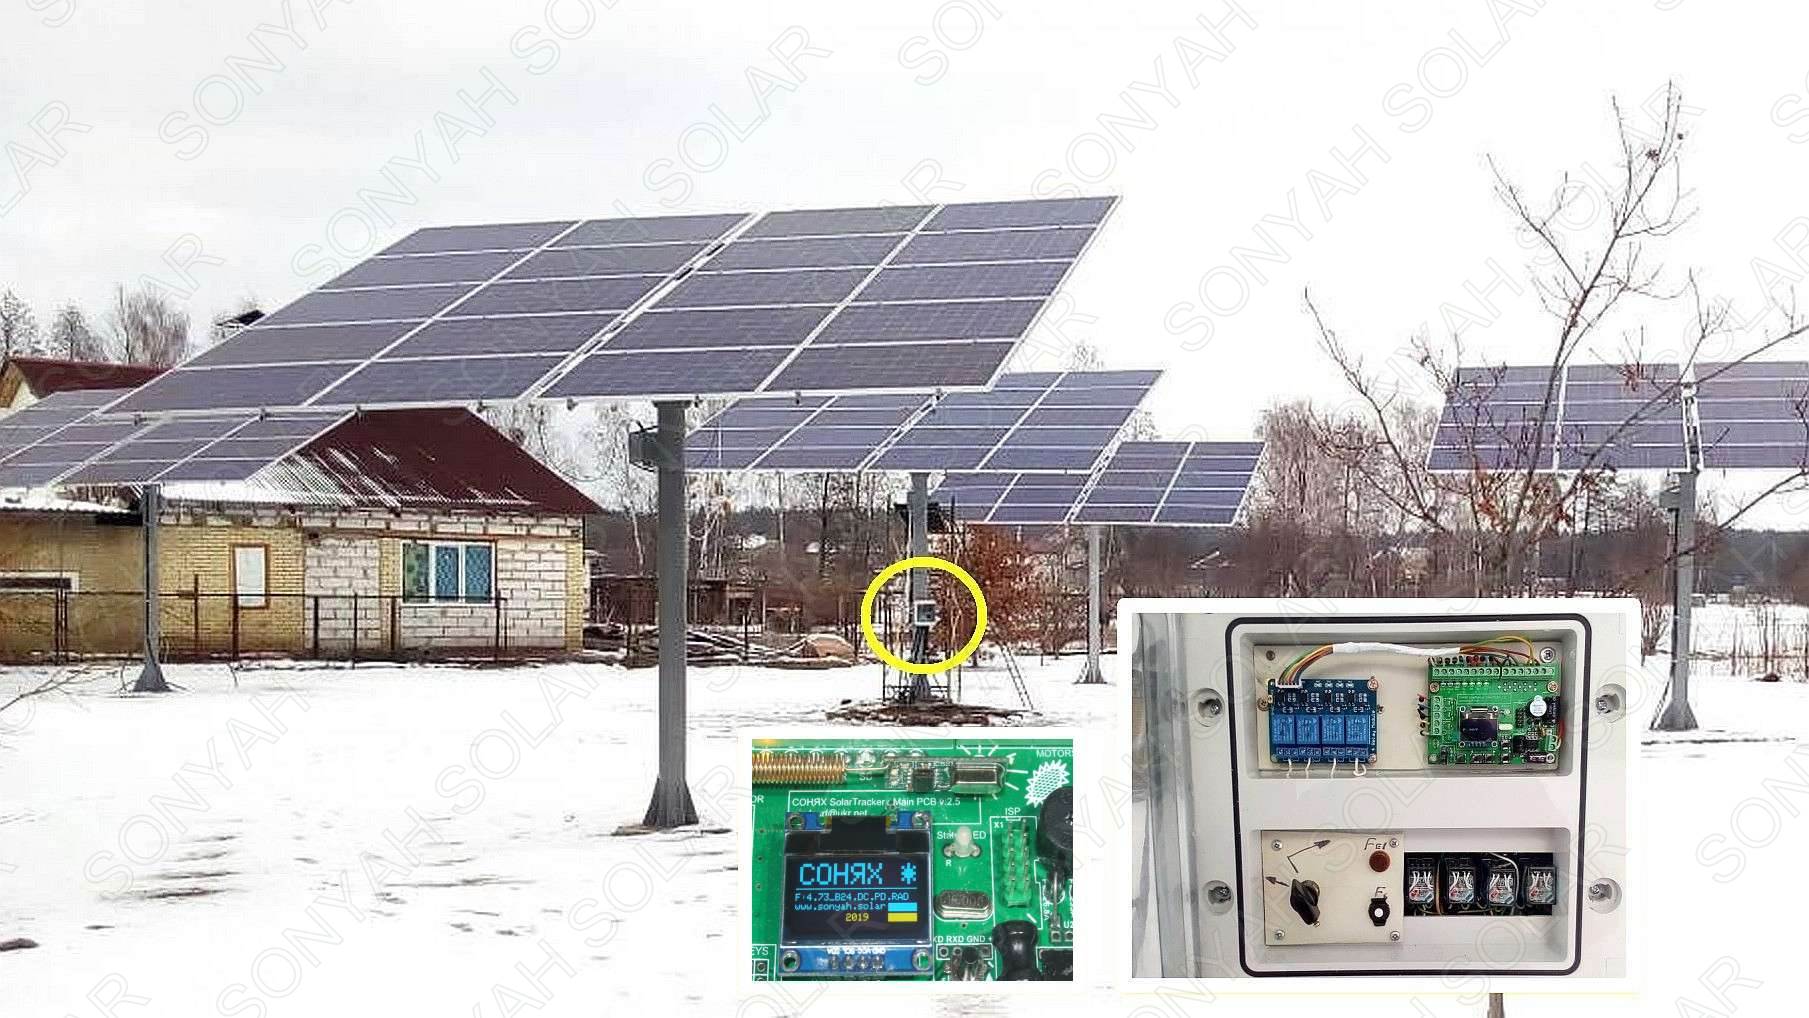 Контроллер СОНЯХ - одновременное управление двухосевыми трекерами солнечных панелей